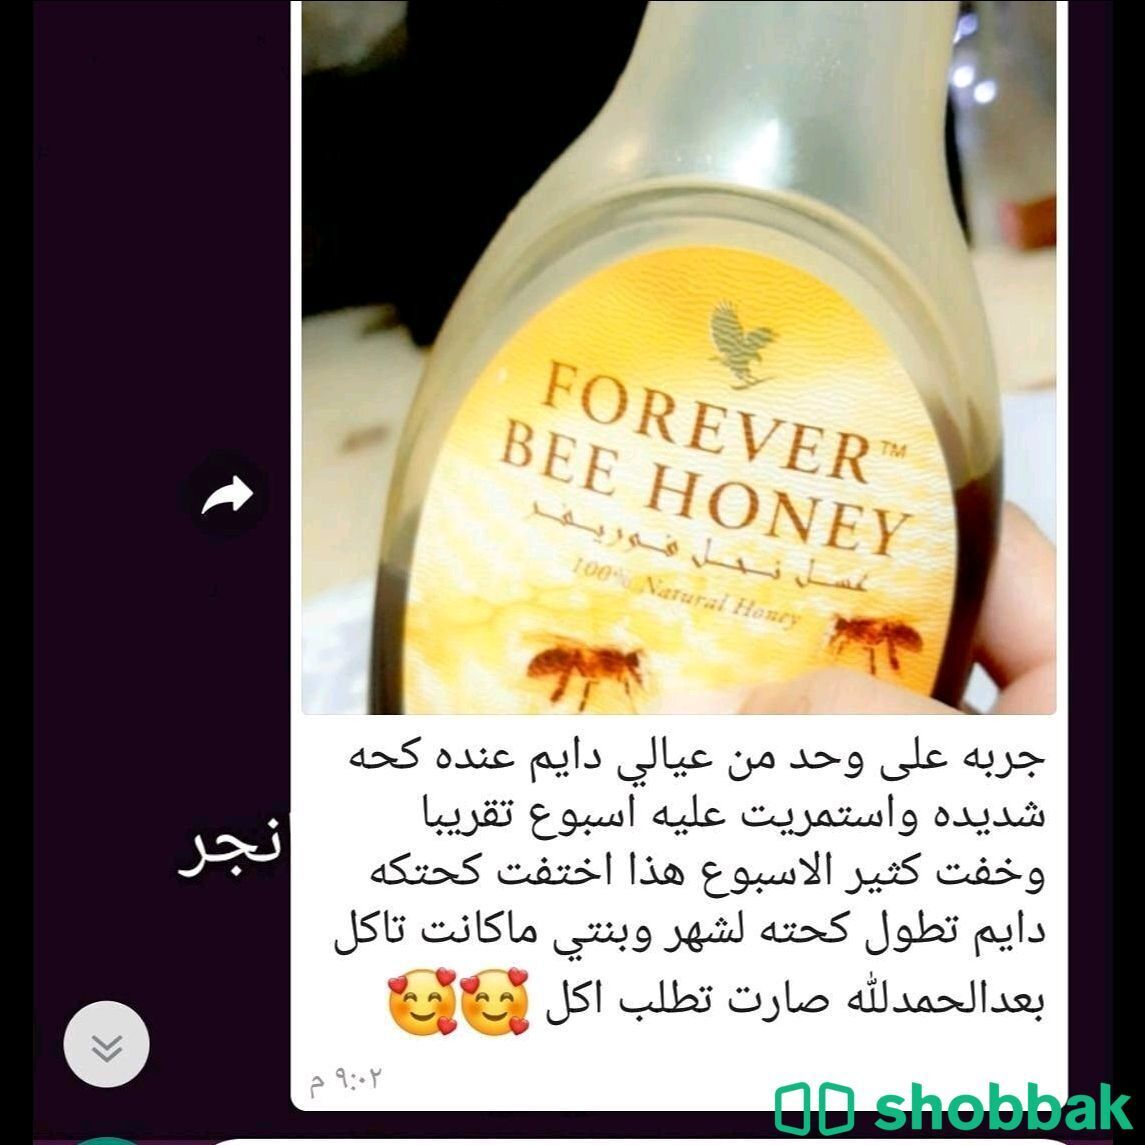  منتج العسل  Shobbak Saudi Arabia